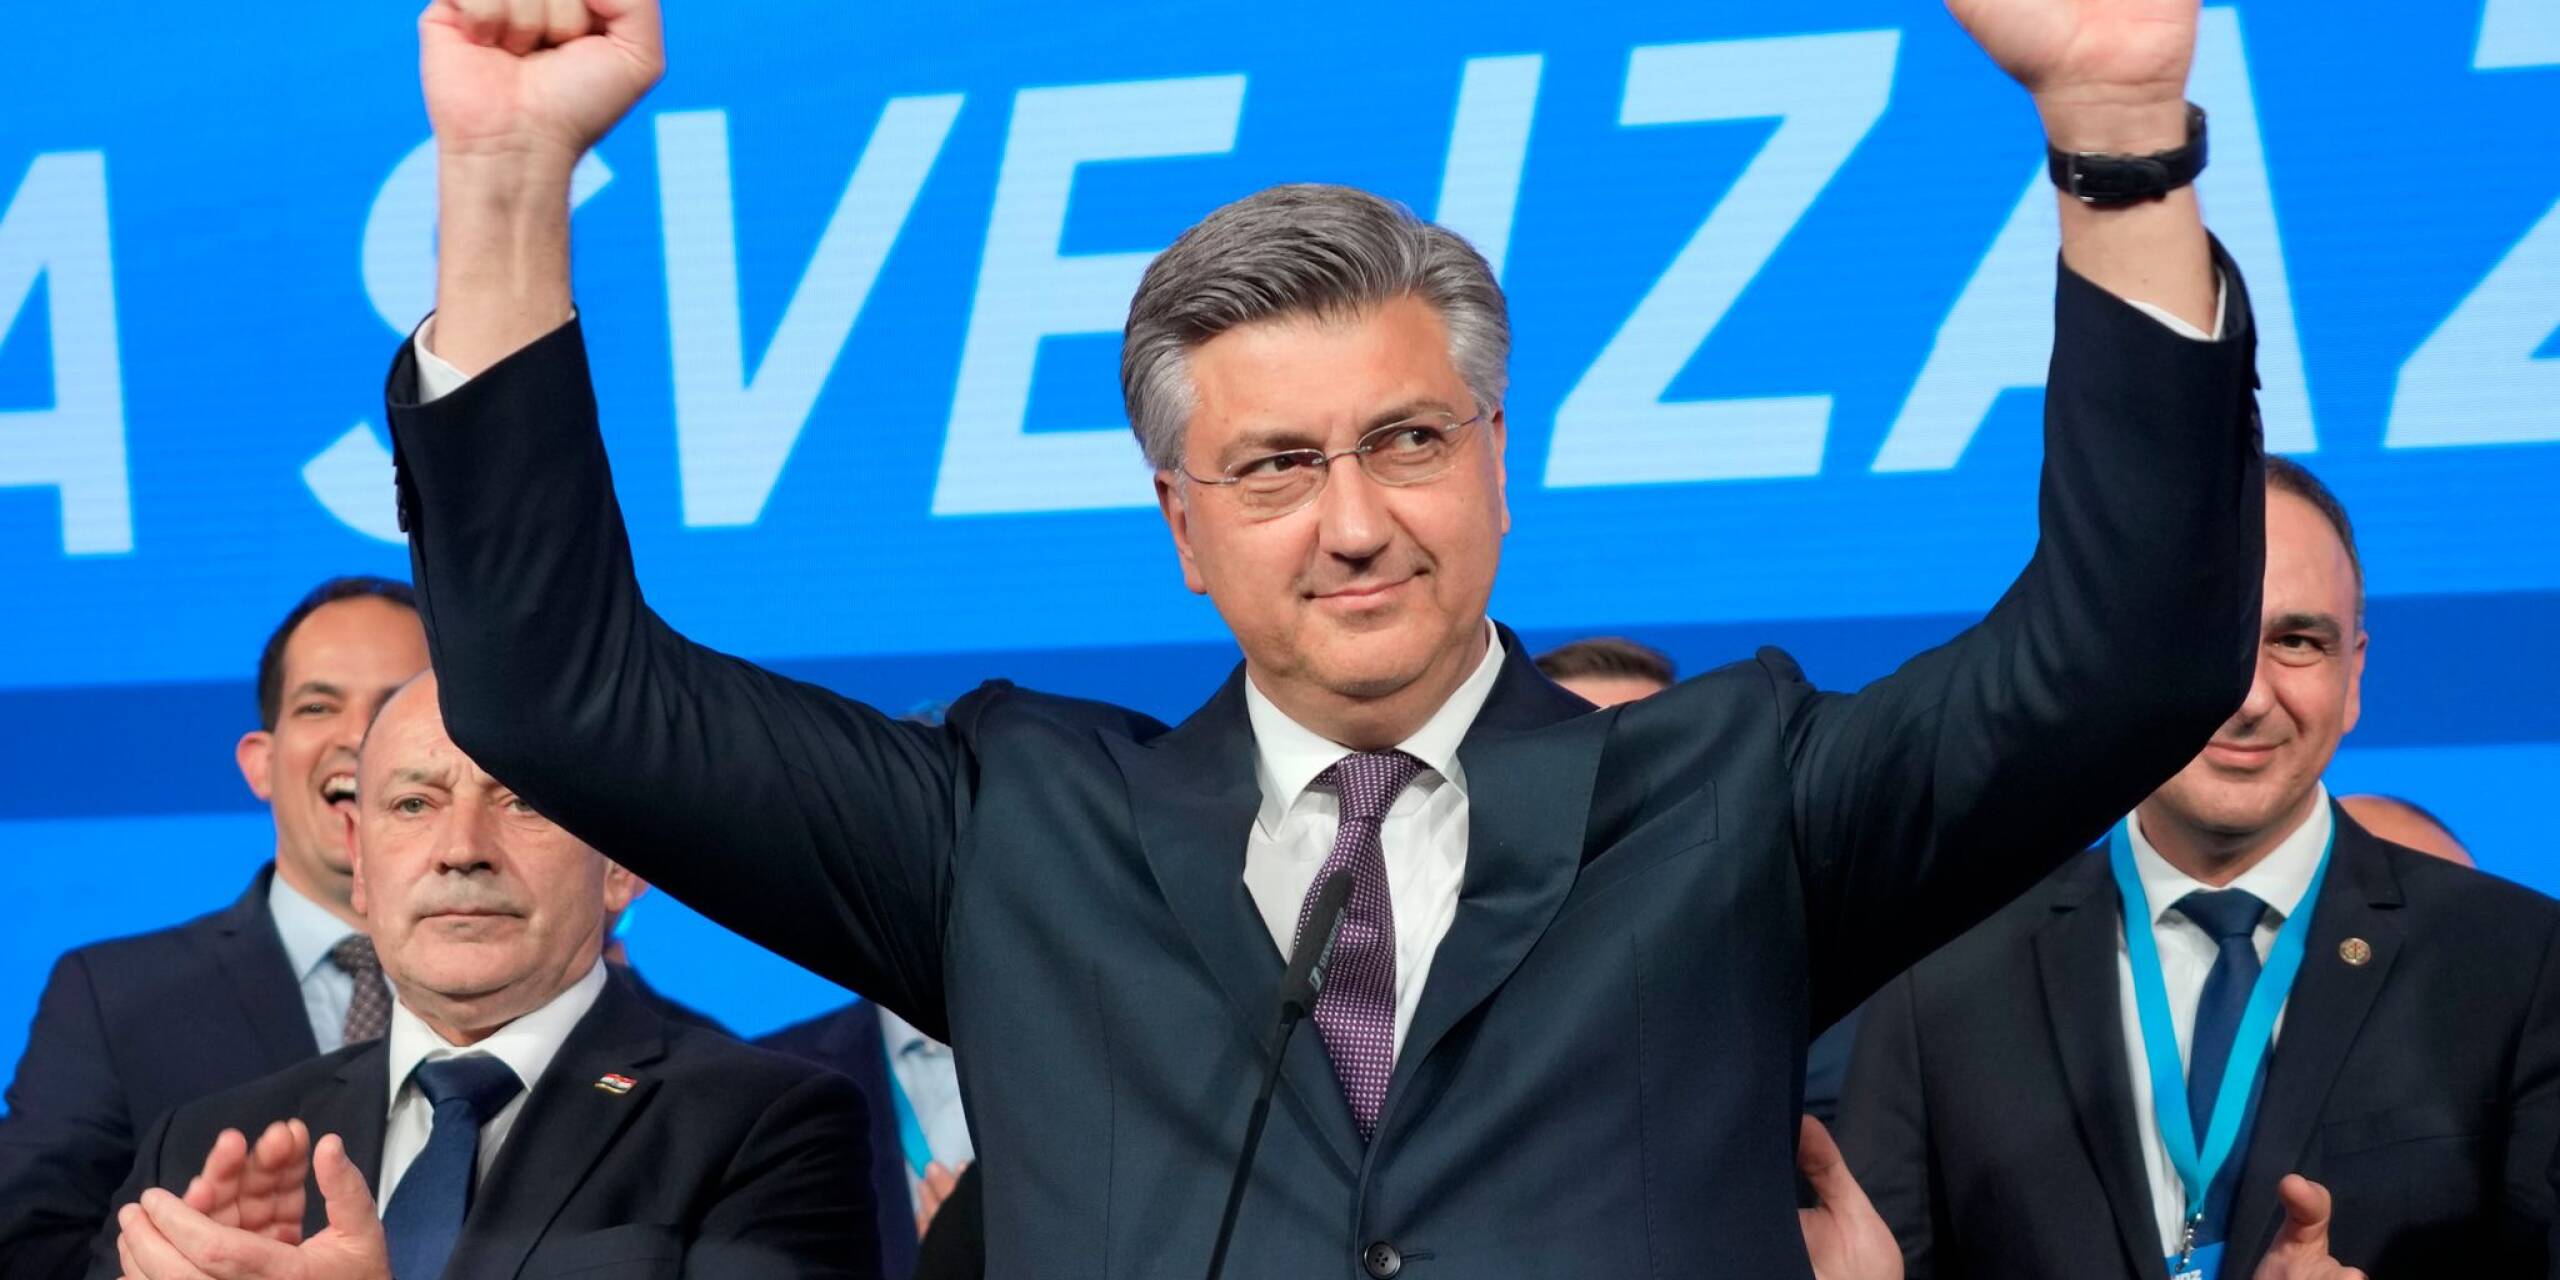 Der kroatische Ministerpräsident Andrej Plenkovic hat gute Chancen, nach der Parlamentswahl Regierungschef zu bleiben. Noch sind nicht alle Stimmen ausgezählt - einer Hochrechnung zufolge dürfte er aber auf etwa 35 Prozent der Wählerstimmen kommen.